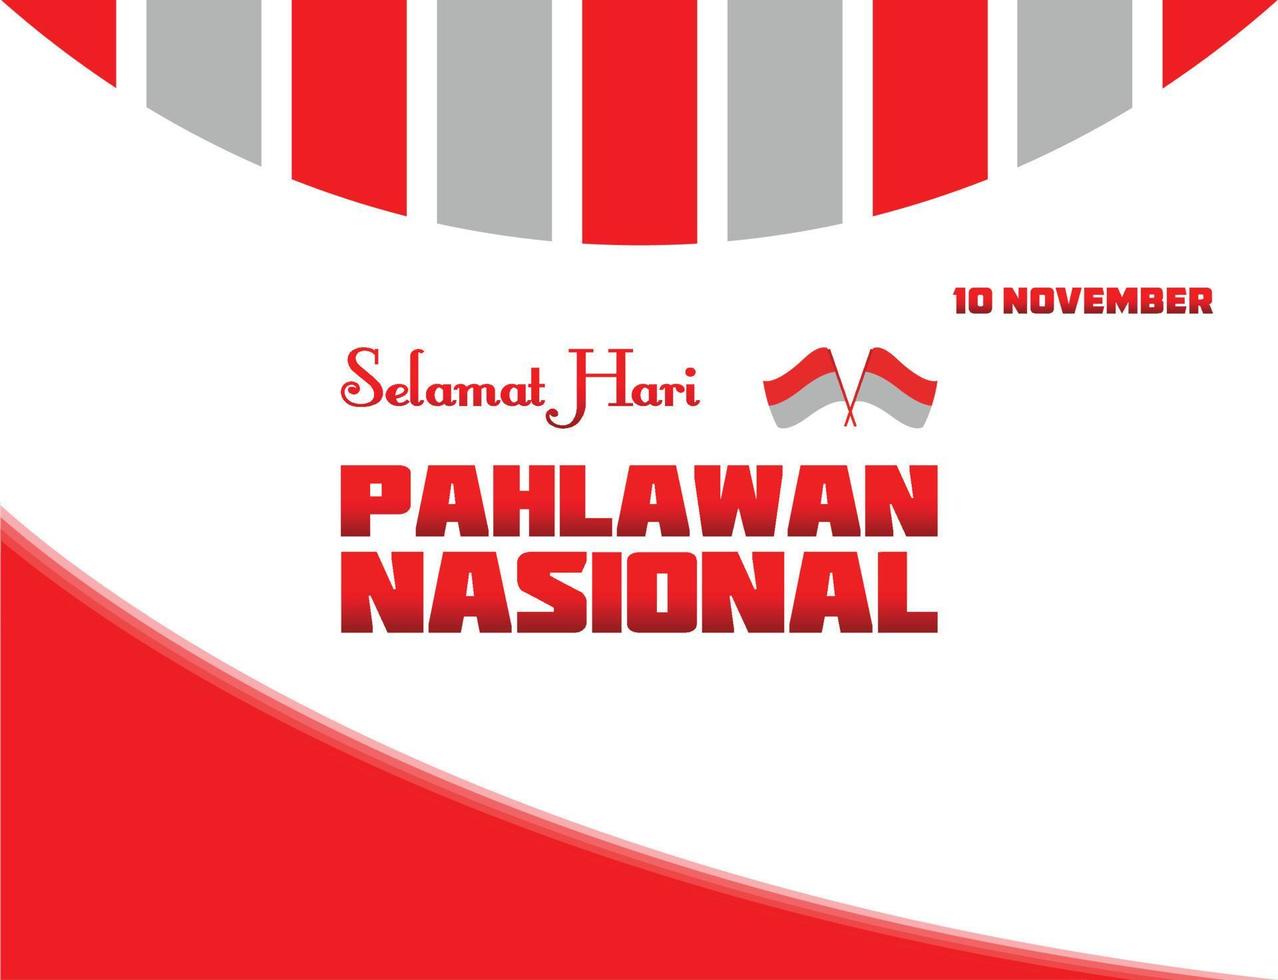 selamat hari pahlawan nacional. traducción feliz día de los héroes nacionales de Indonesia. vector